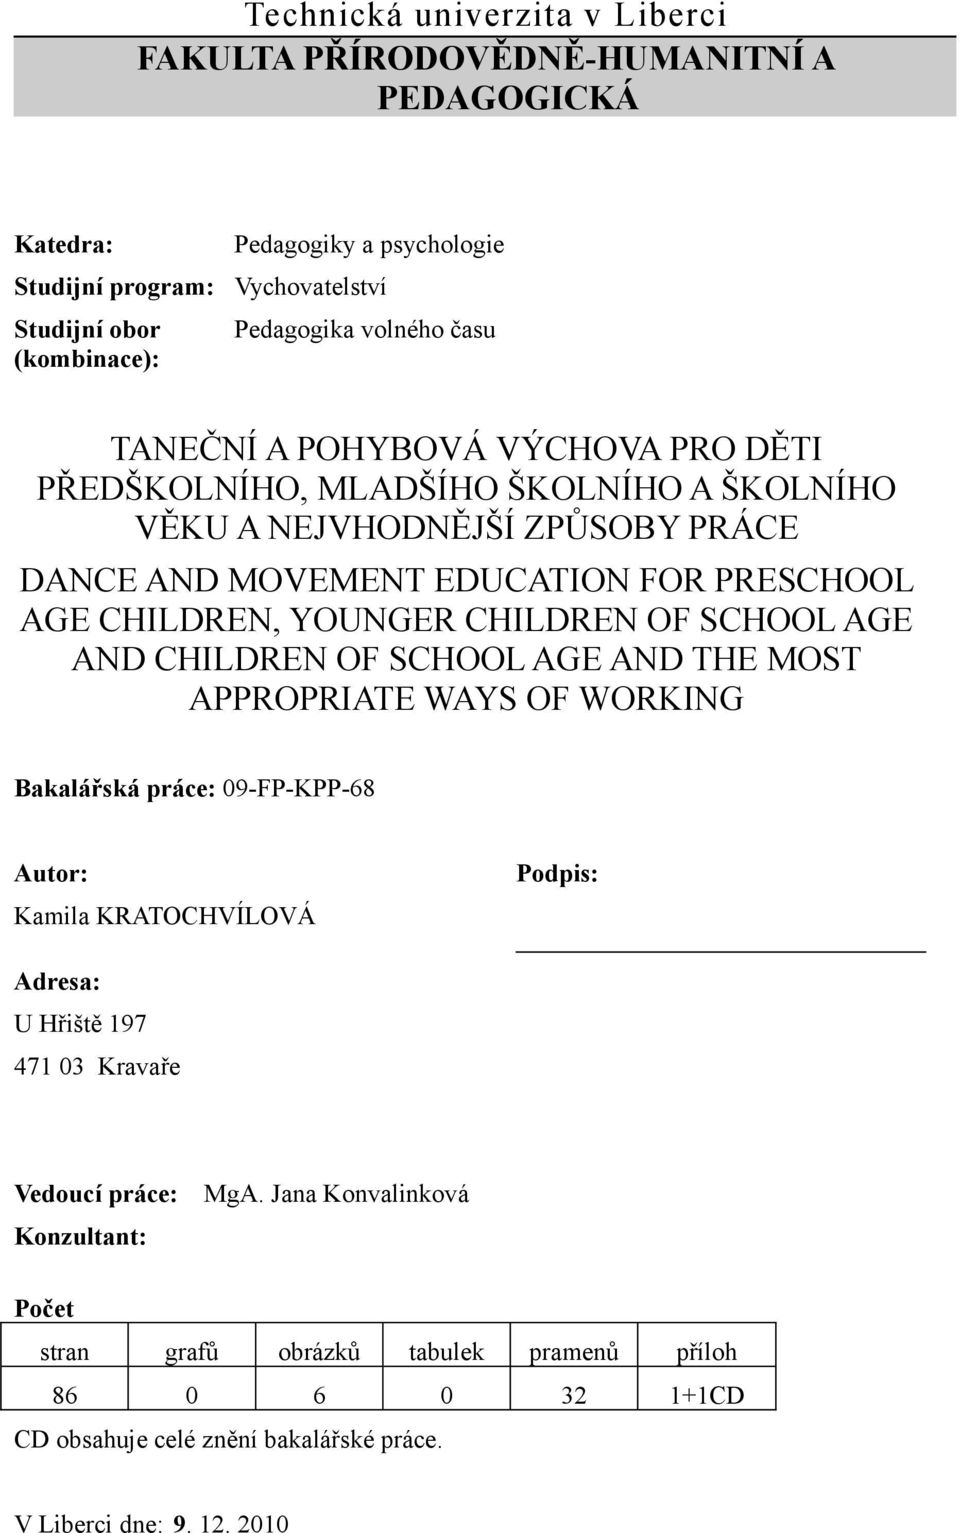 YOUNGER CHILDREN OF SCHOOL AGE AND CHILDREN OF SCHOOL AGE AND THE MOST APPROPRIATE WAYS OF WORKING Bakalářská práce: 09-FP-KPP-68 Autor: Kamila KRATOCHVÍLOVÁ Podpis: Adresa: U Hřiště 197